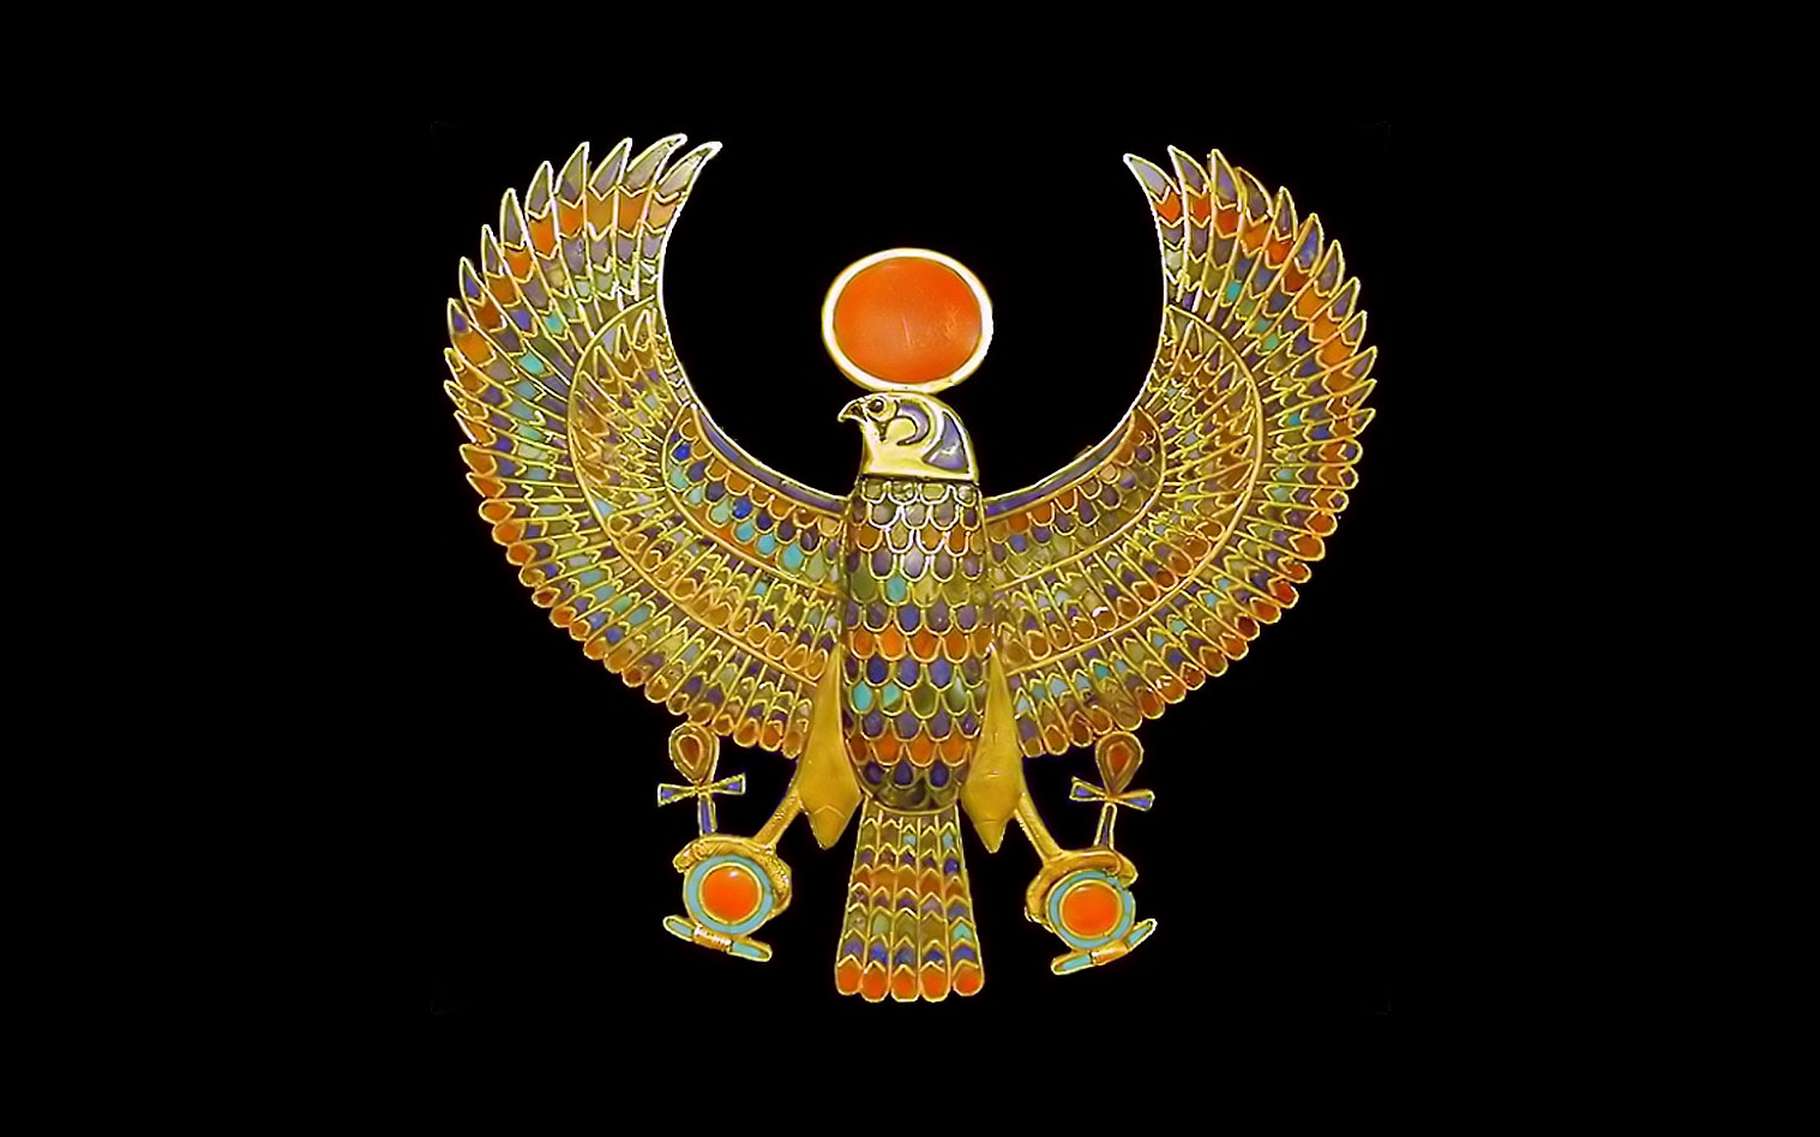 Le pectoral du pharaon, l'un des joyaux retrouvés au plus près de la momie. Ce bijou est un ornement vestimentaire ou corporel, orné de pierres semi-précieuses, turquoise, cornaline, lapis-lazuli, et de pâte de verre multicolore. Comme son nom l’indique, ce bijou pectoral se place sur le thorax, considéré chez les civilisations anciennes comme le siège de l’âme. Porté à cet endroit, il est supposé assurer une protection magique ou divine. Le faucon représente le dieu Horus, portant le disque solaire et déployant ses ailes en signe de souveraineté. Dans ses griffes, des attributs des dieux égyptiens, la croix Ânkh, signe de vie, et l’anneau Shen, signe d’éternité. Ce pectoral fait partie de 143 bijoux retrouvés, enfouis dans les bandelettes entourant la momie. © Jean-Pierre Dalbéra, Flickr, CC by 2.0